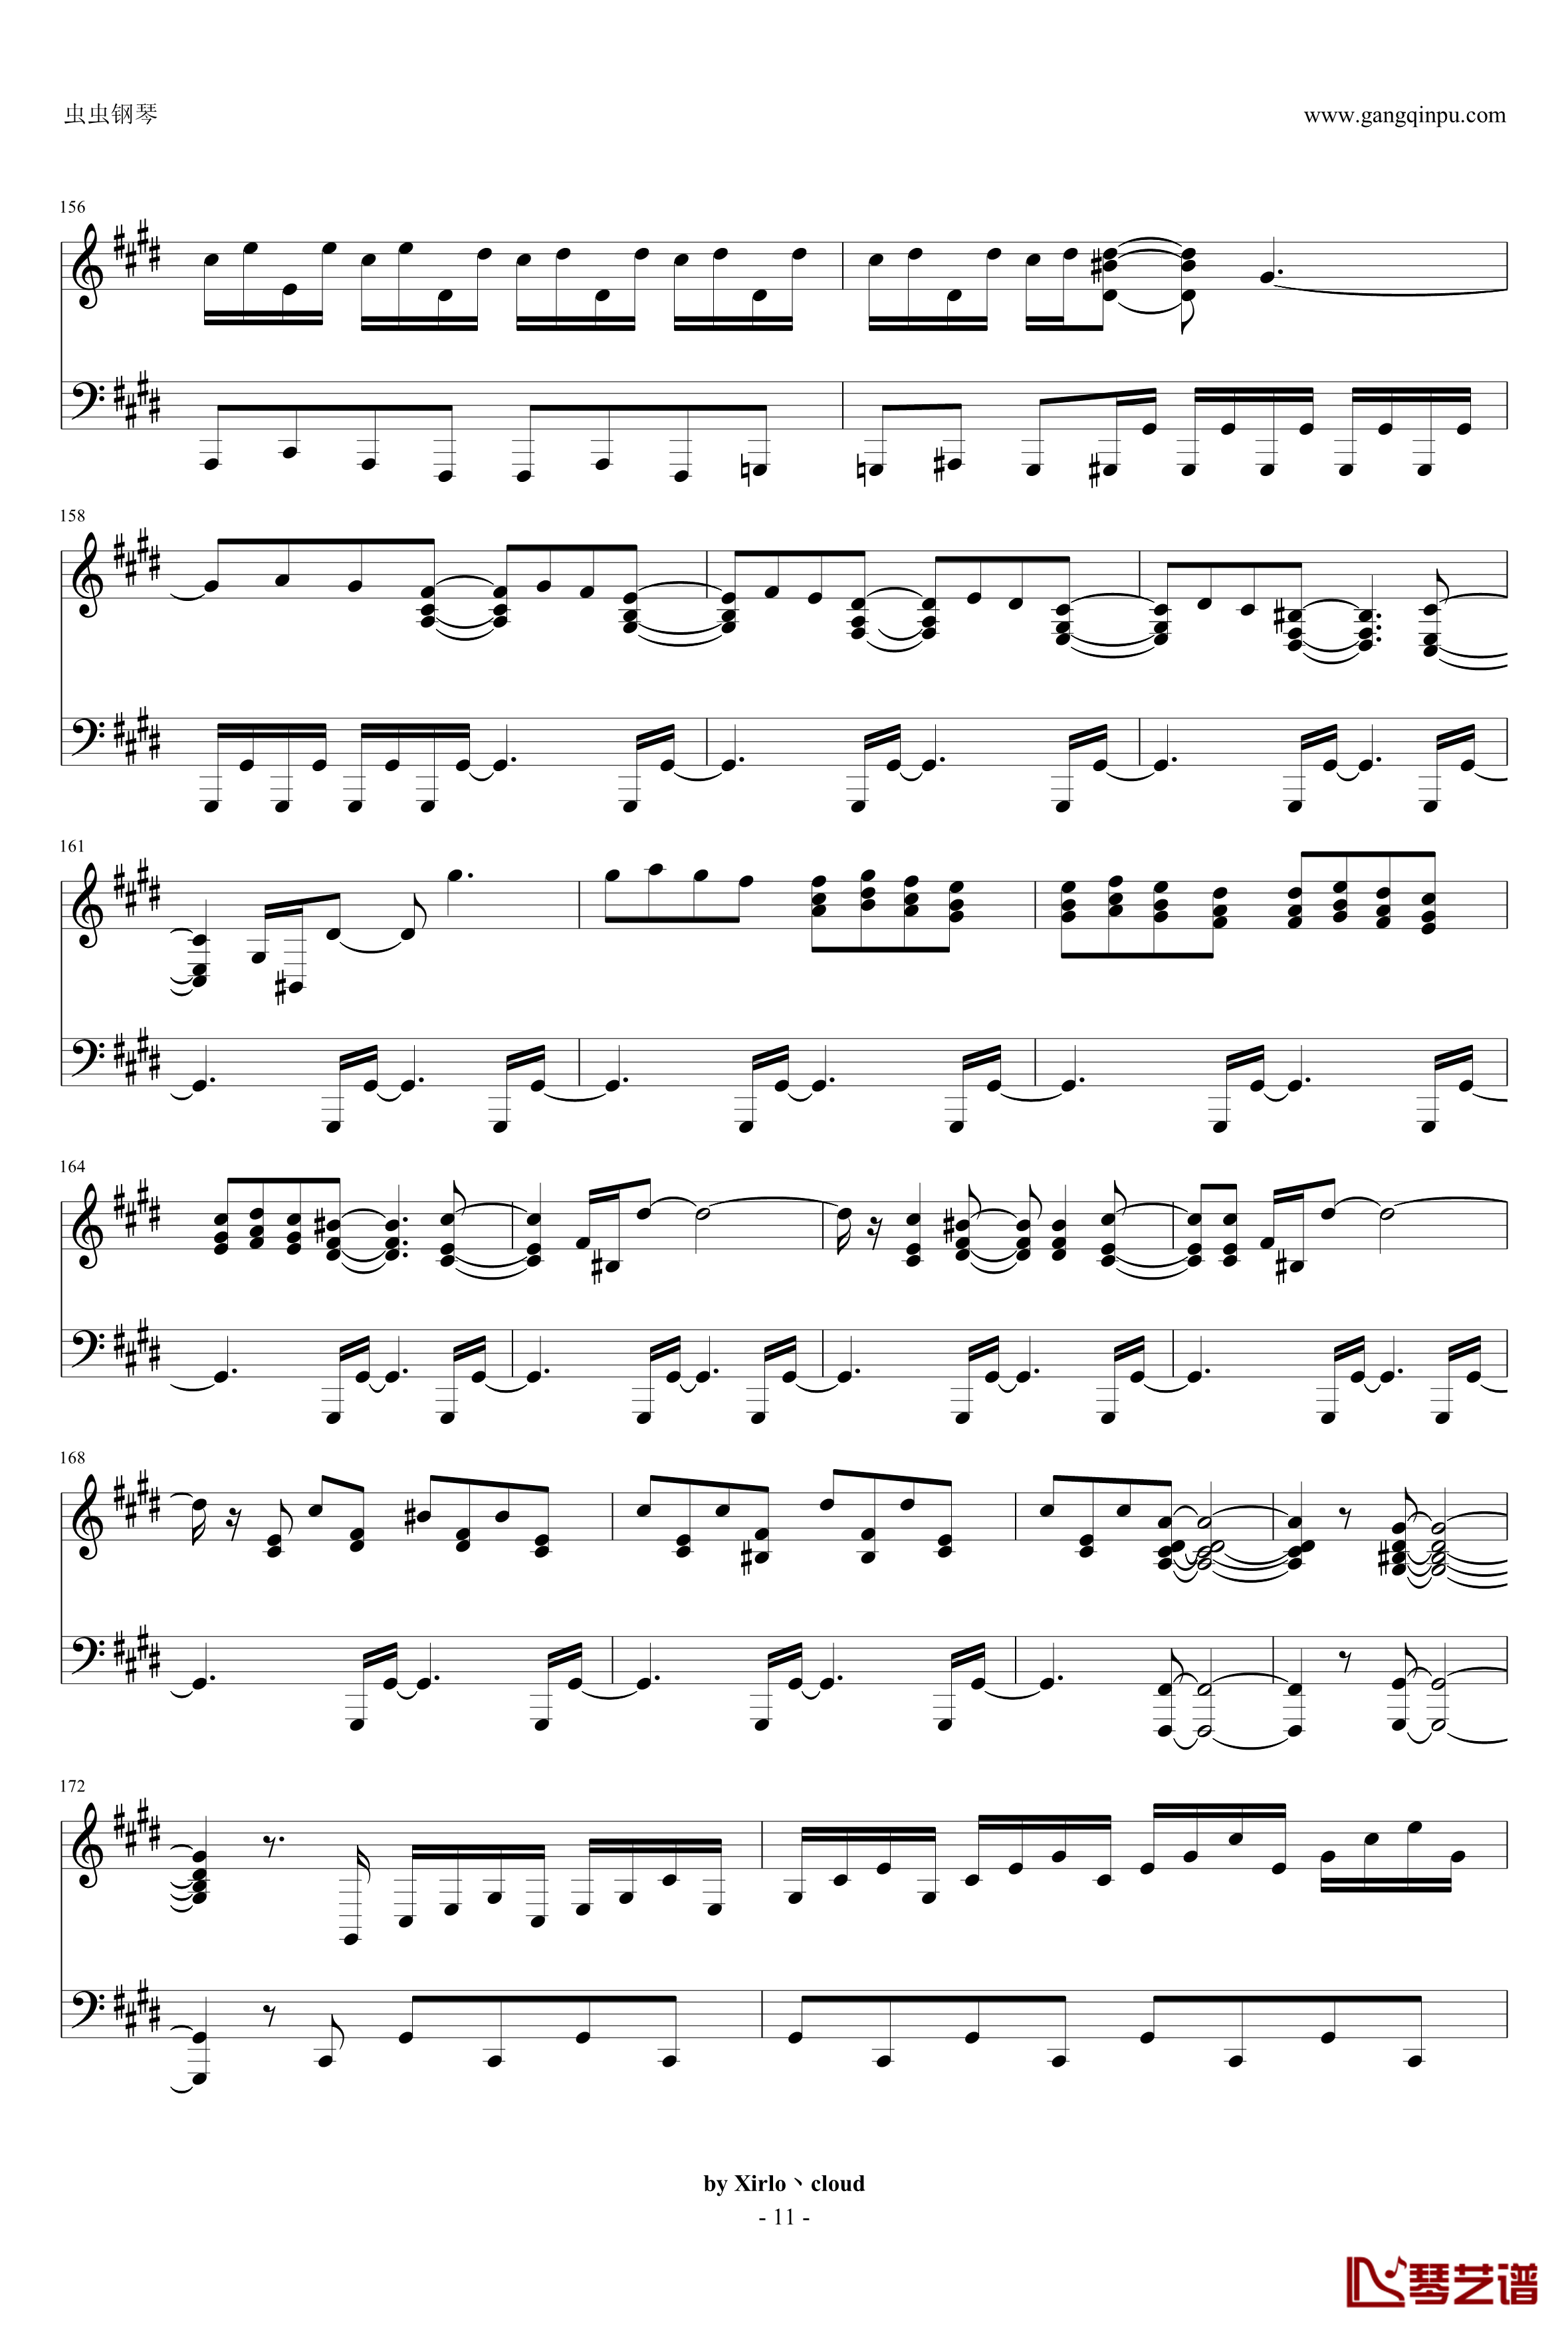 月光奏鸣曲钢琴谱-改编版-贝多芬-beethoven11